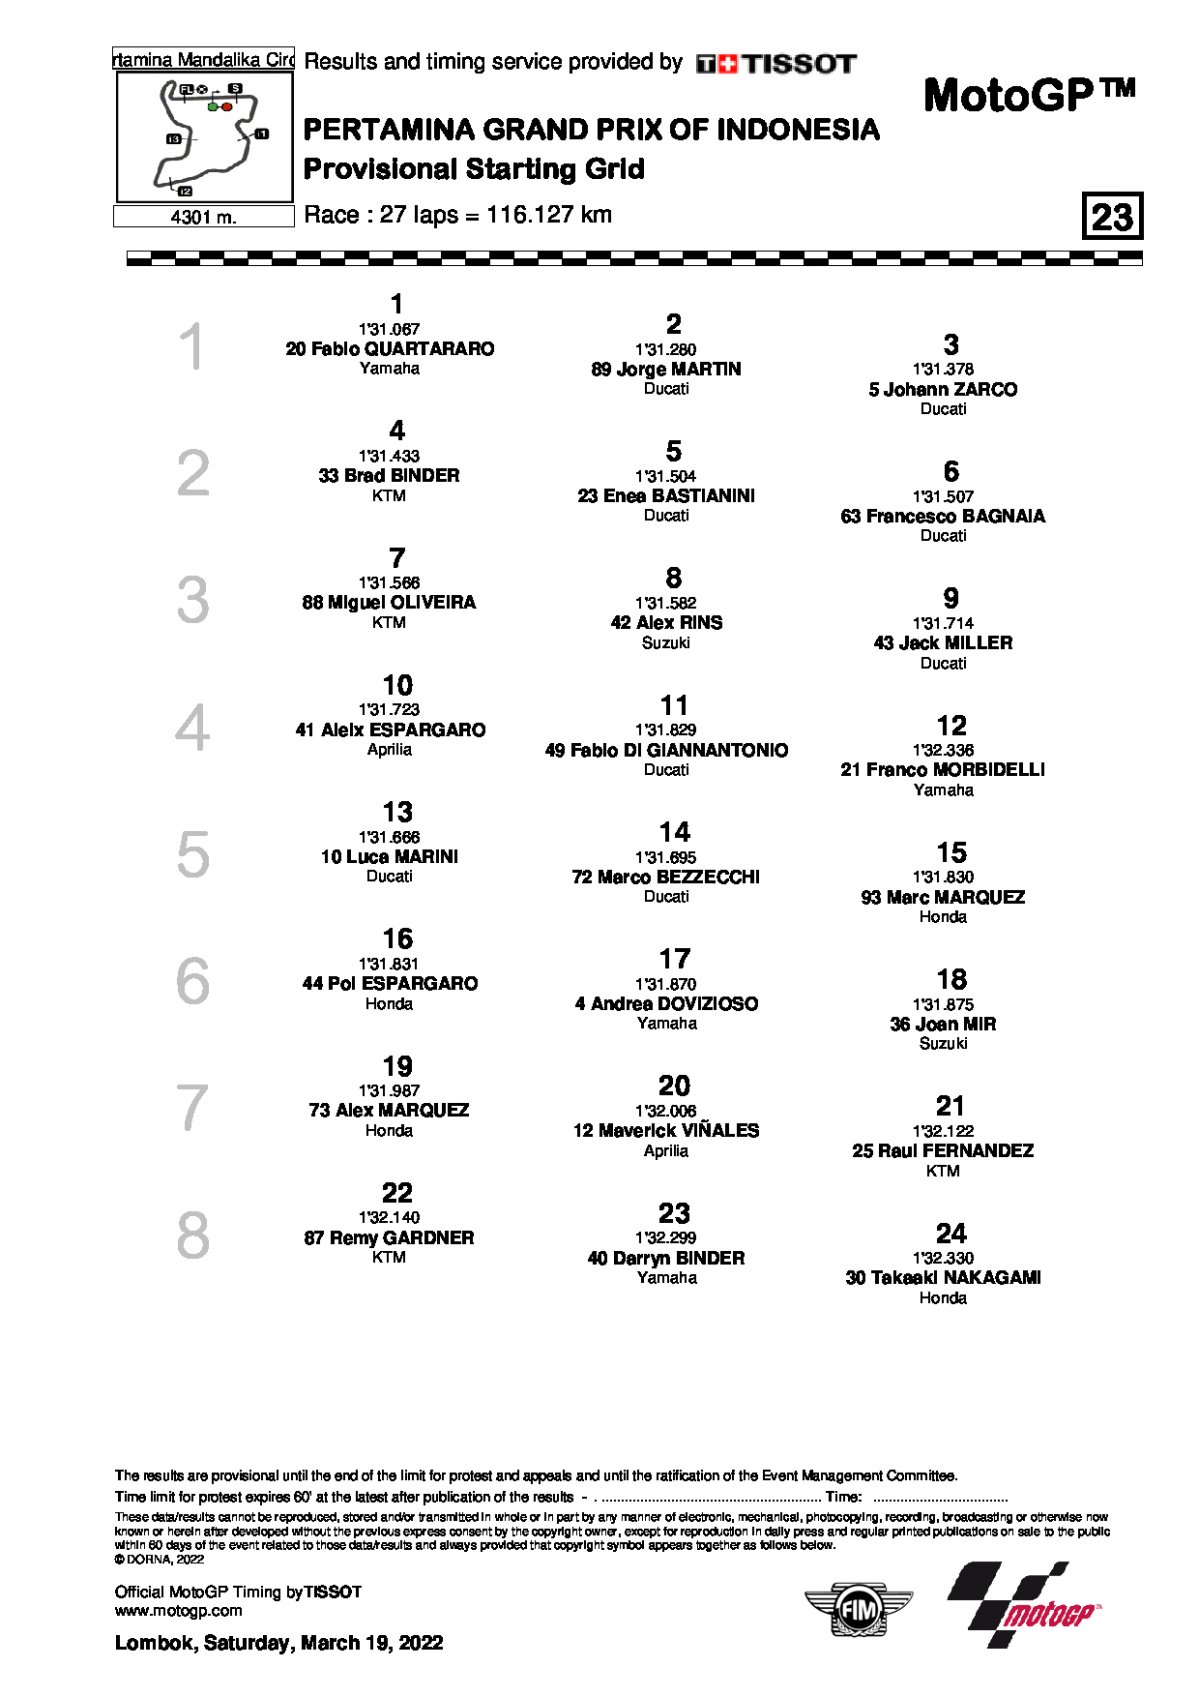 Стартовая решетка Гран-При Индонезии MotoGP (20/03/2022)